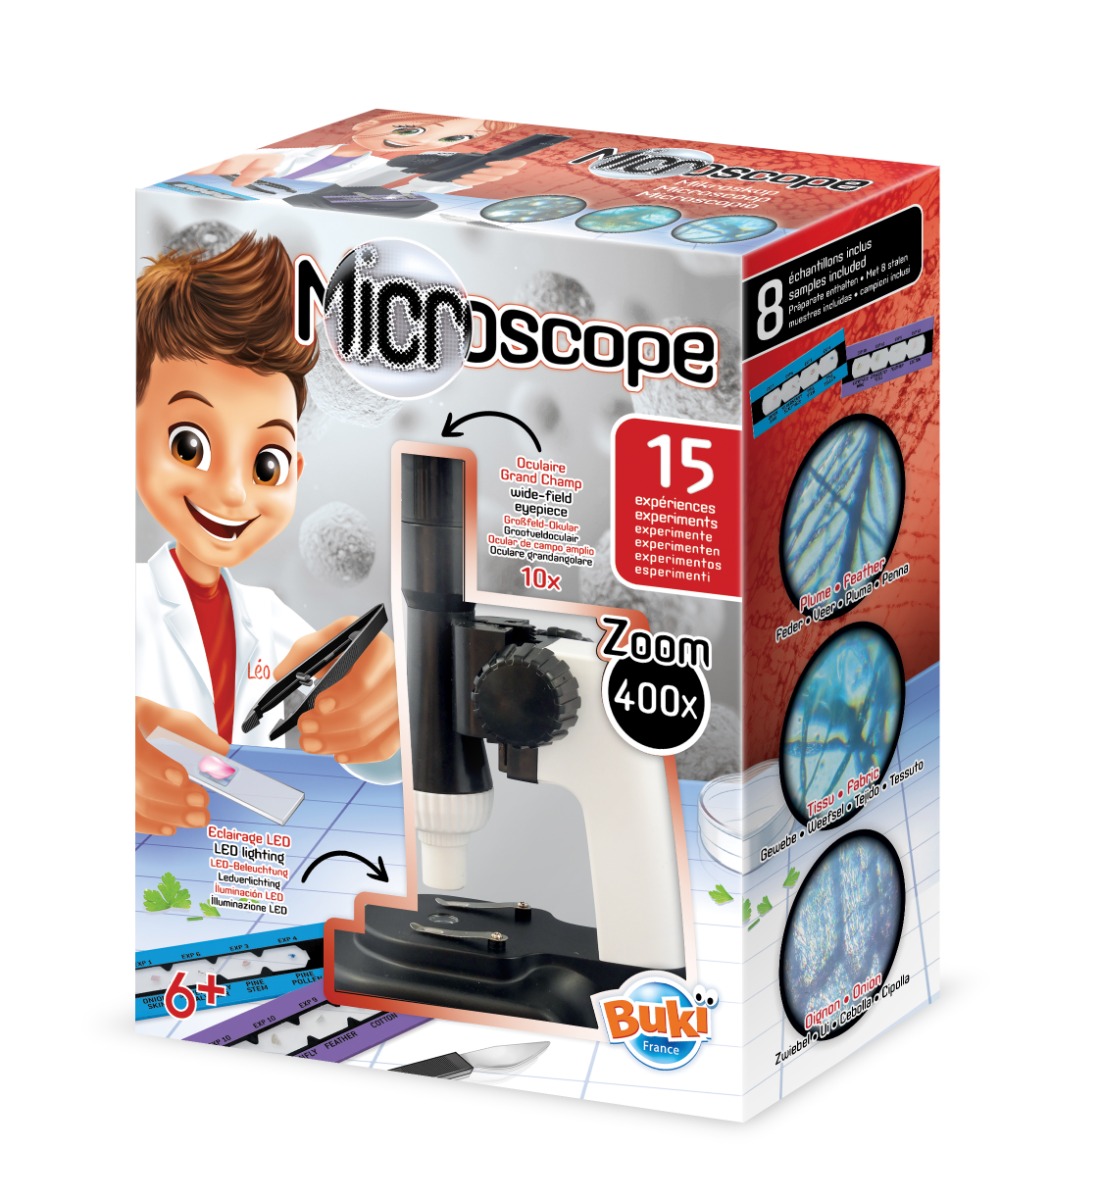 Mikroskop 15 experimentov -V2